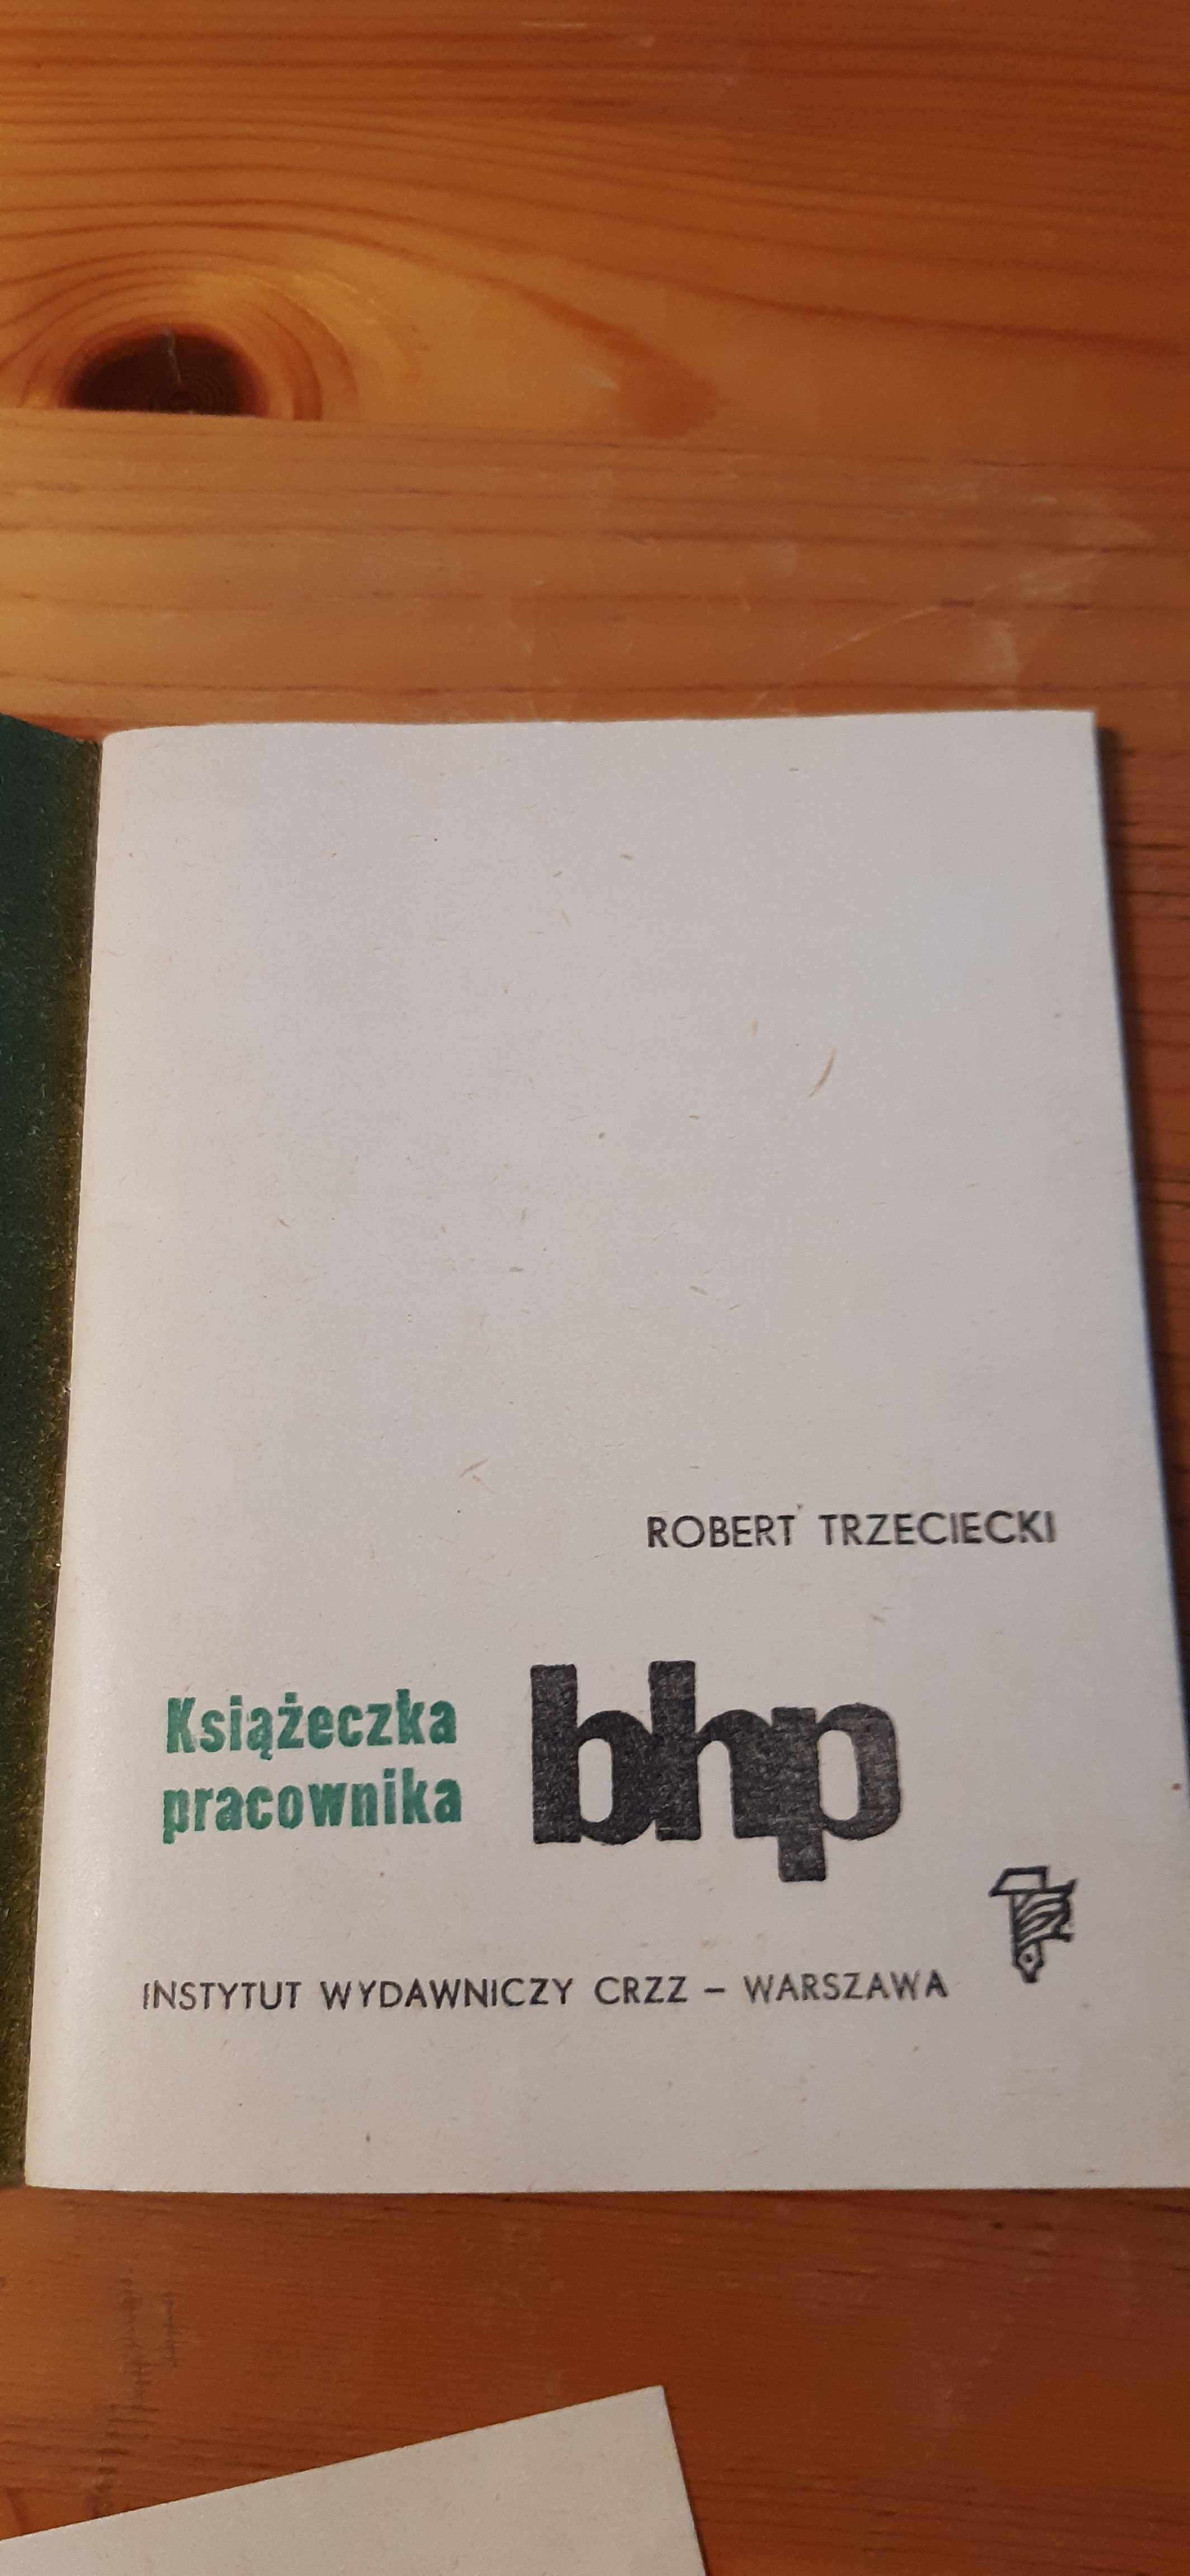 stara książeczka pracownika bhp dla kolekcjonerów prl